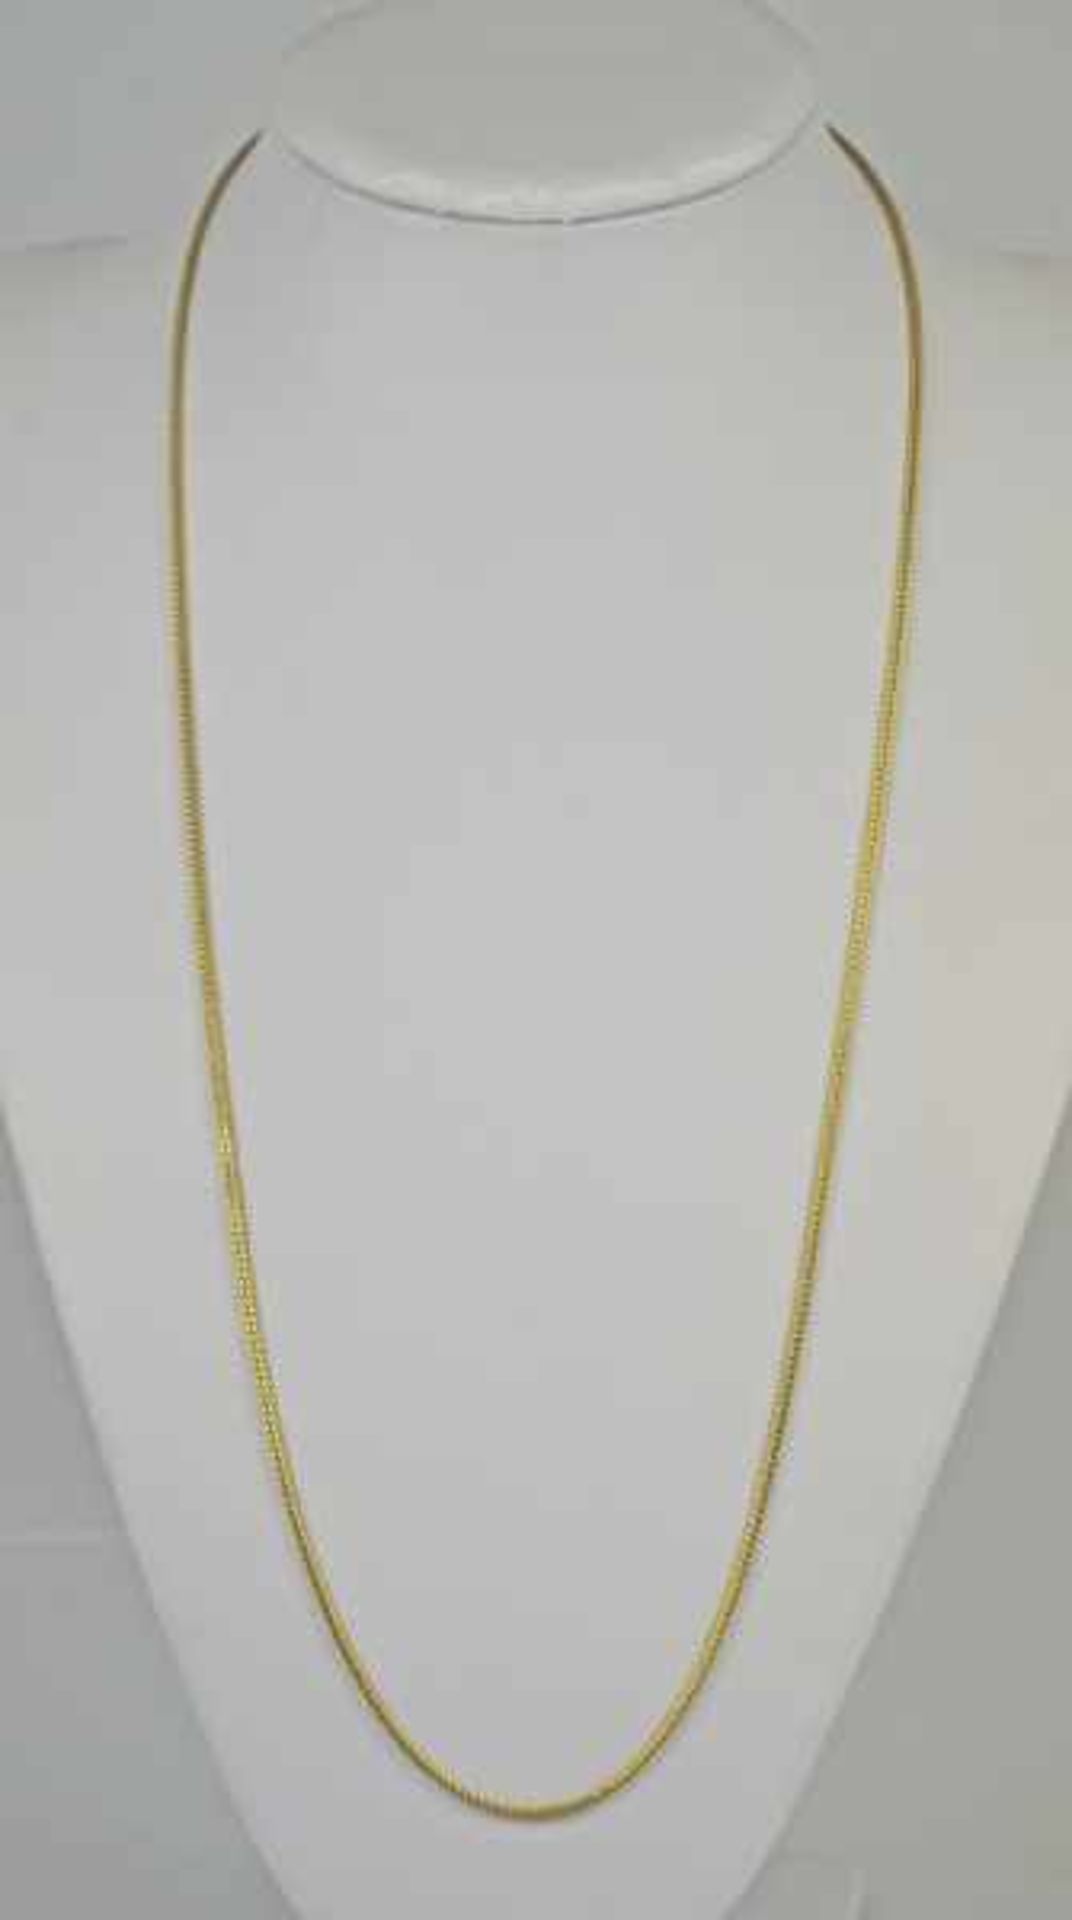 LANGE KETTE in Schnuroptik mit Hakenverschluss, Gelbgold 18ct, 17,7g, L 74cm - Bild 3 aus 3